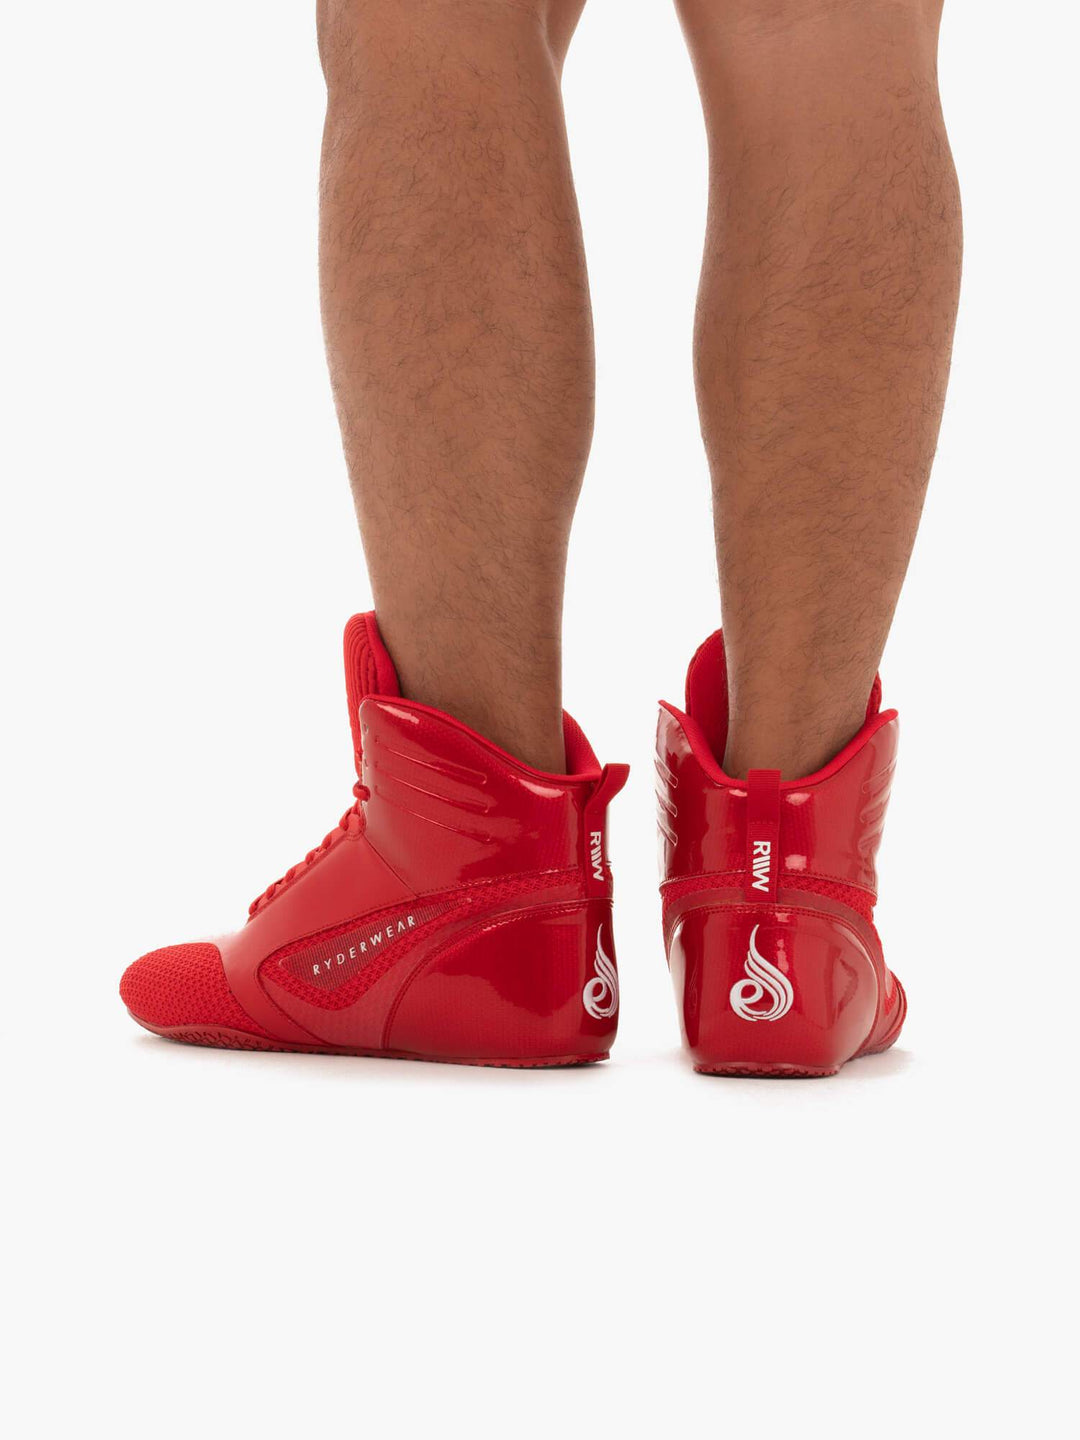 D-Mak Carbon Fibre - Red Shoes Ryderwear 